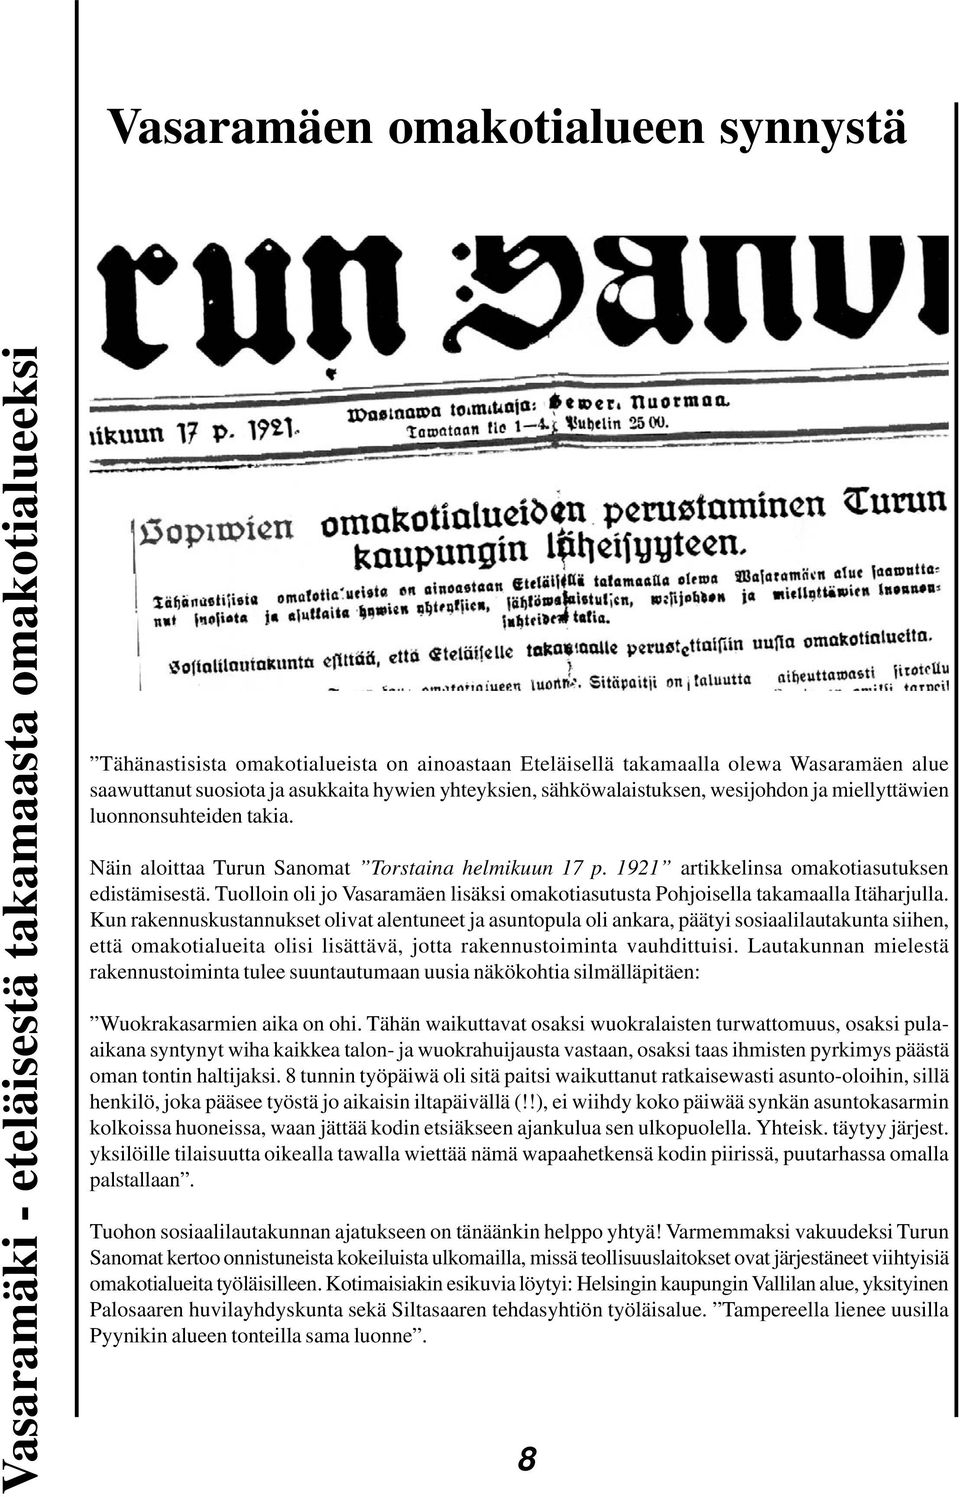 1921 artikkelinsa omakotiasutuksen edistämisestä. Tuolloin oli jo Vasaramäen lisäksi omakotiasutusta Pohjoisella takamaalla Itäharjulla.